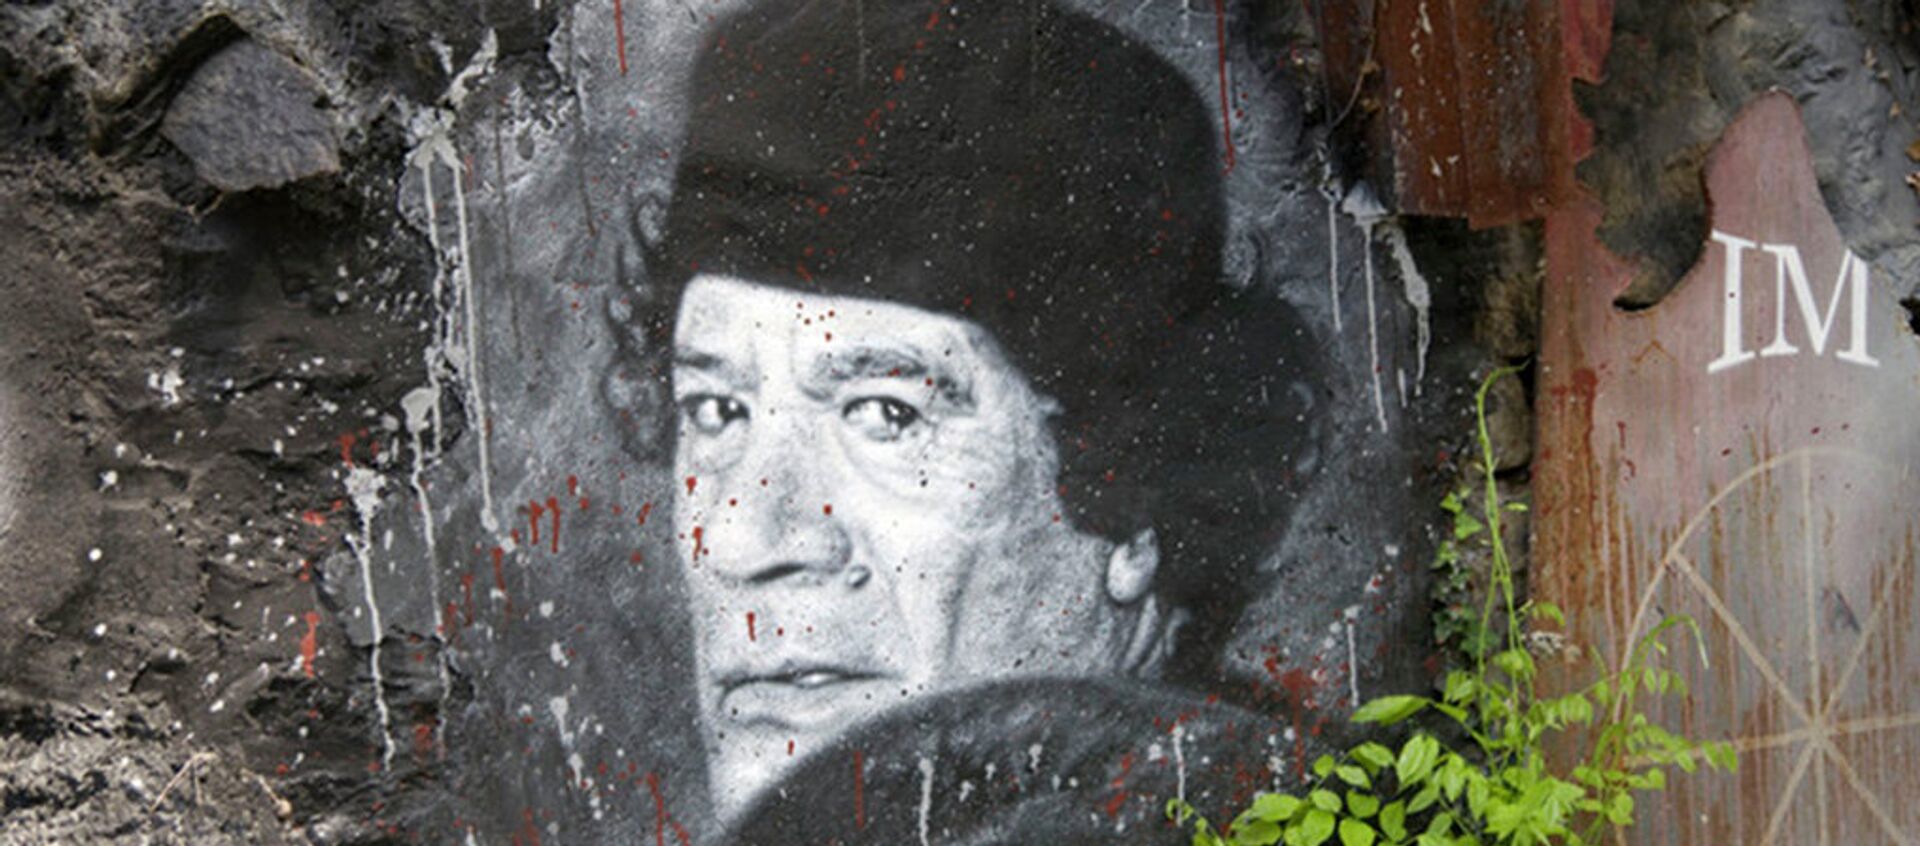 Grafit bivšeg libijskog vođe  Muamera al Gadafija u Sirtu pre nego što je ubijen od strane NATO-a pobune u 2011. godini. - Sputnik Srbija, 1920, 21.10.2015